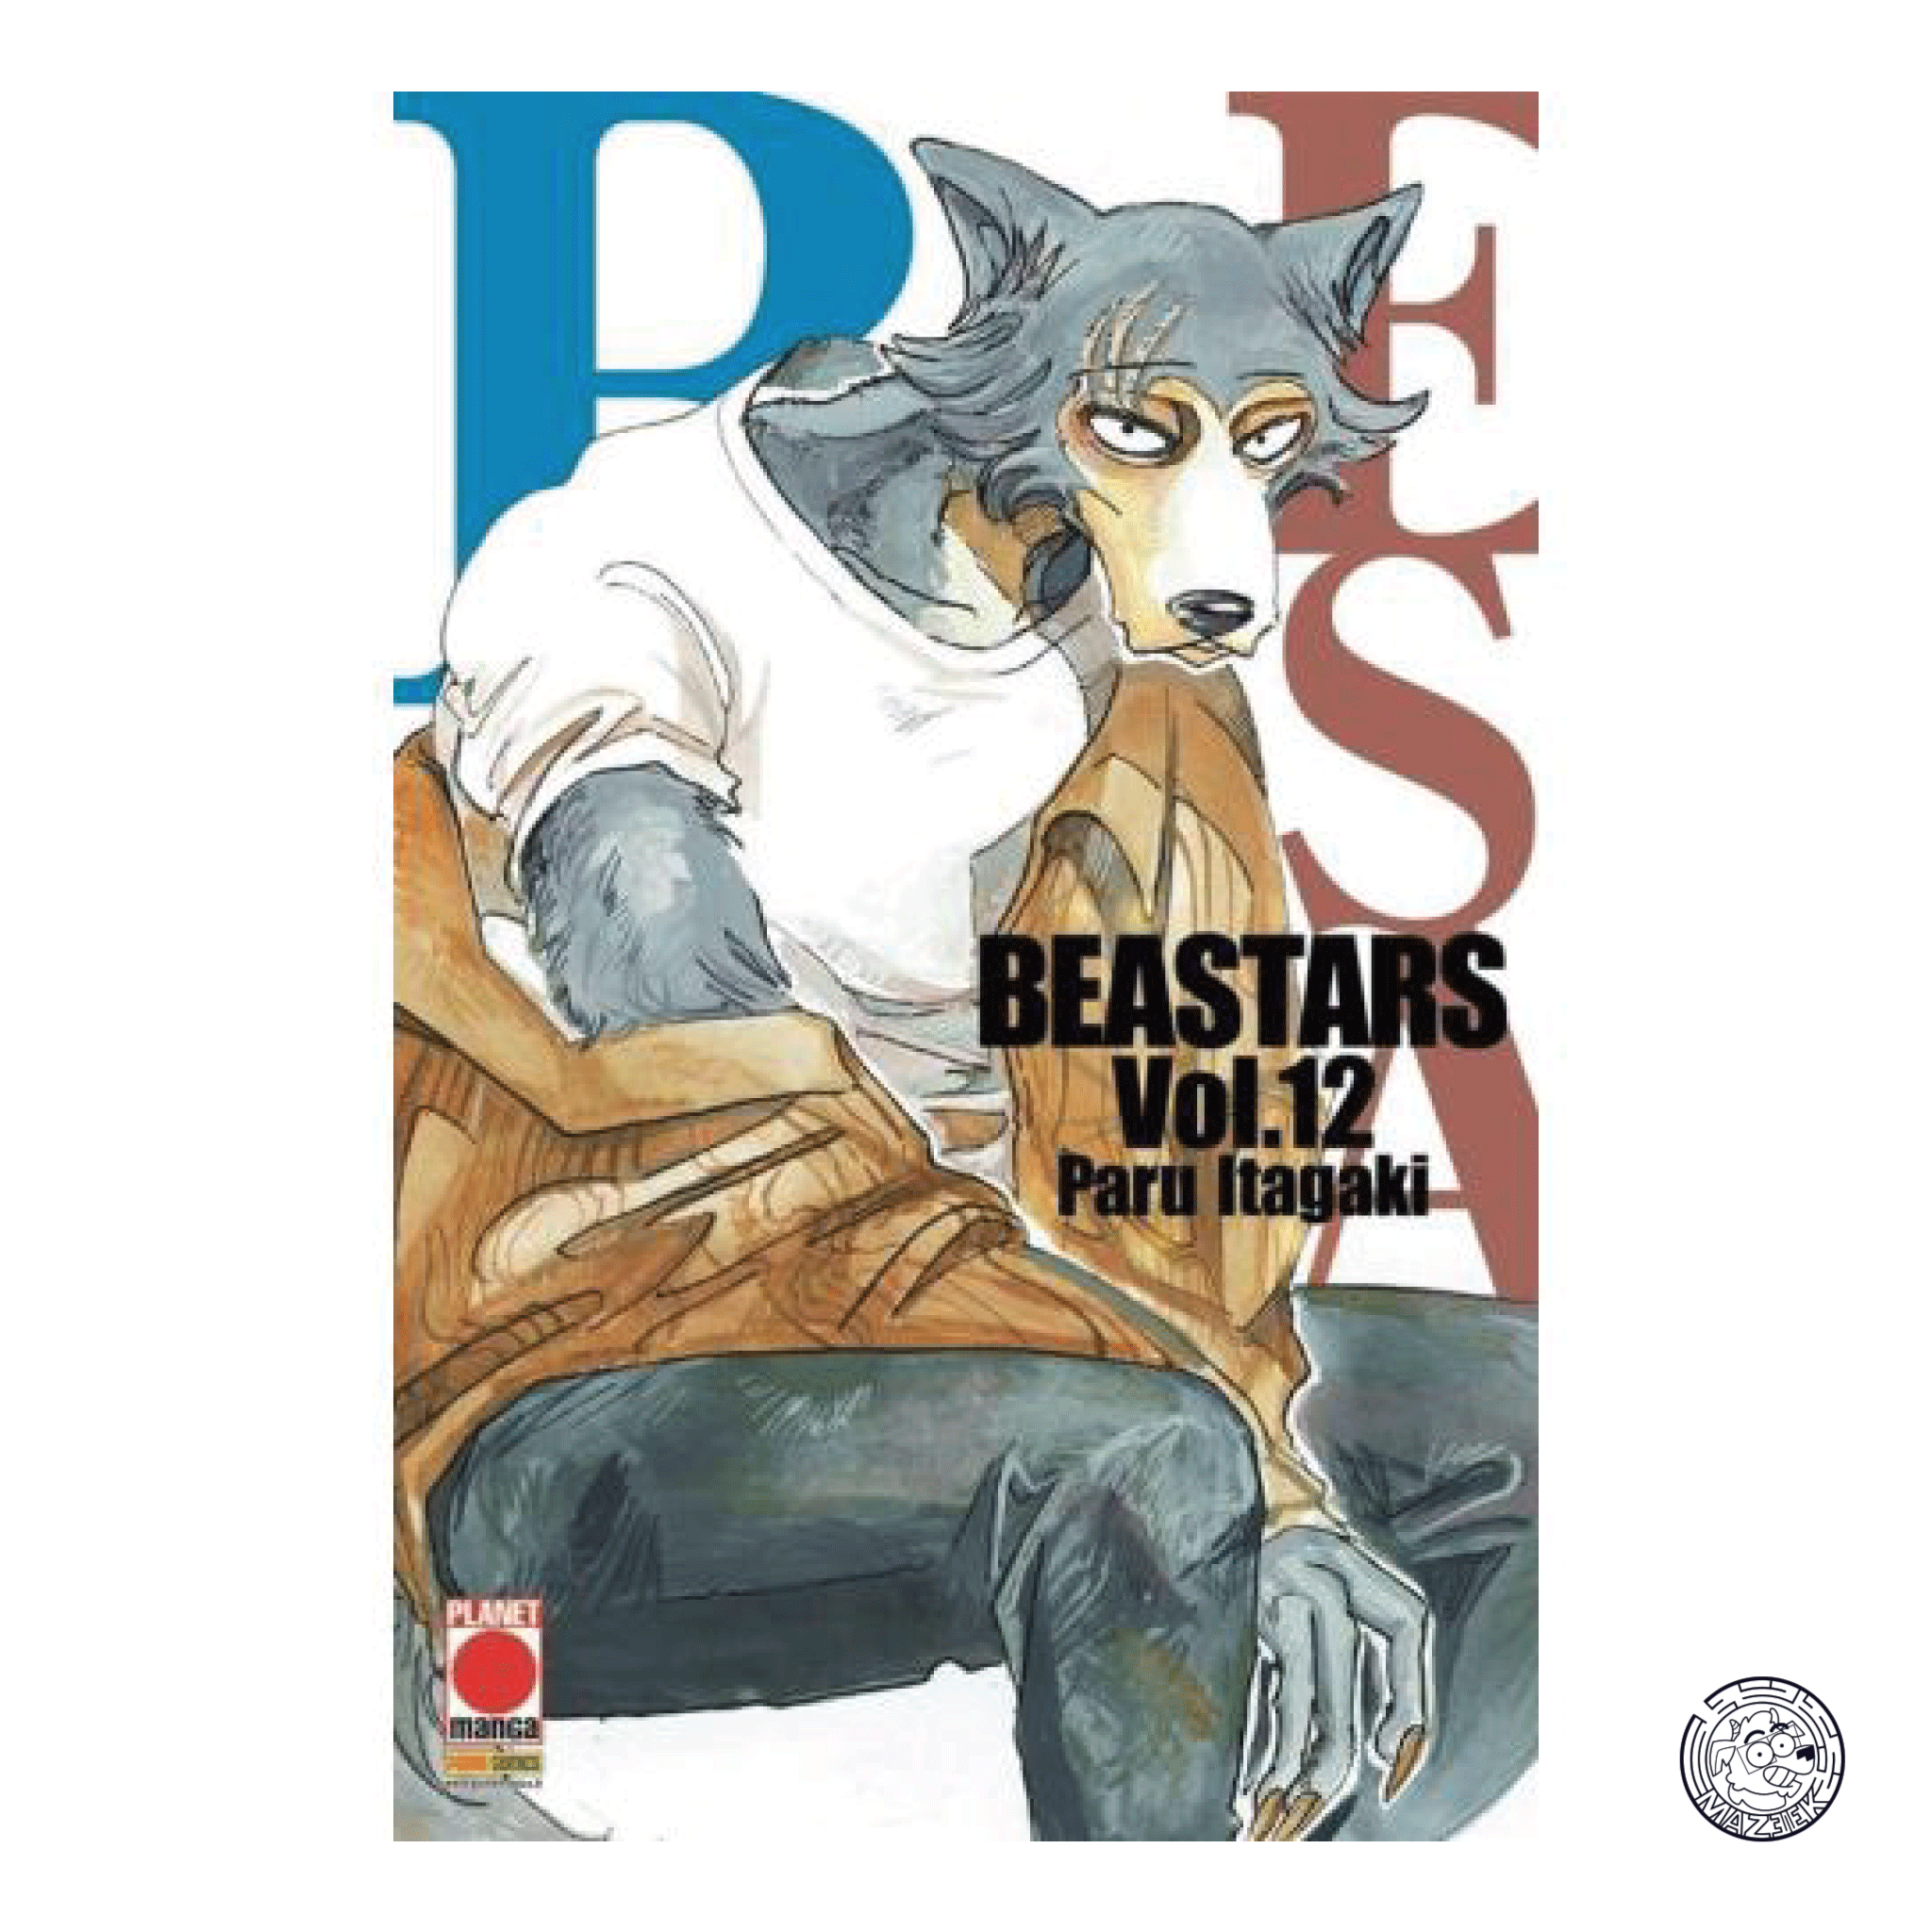 Beastars 12 - Reprint 1